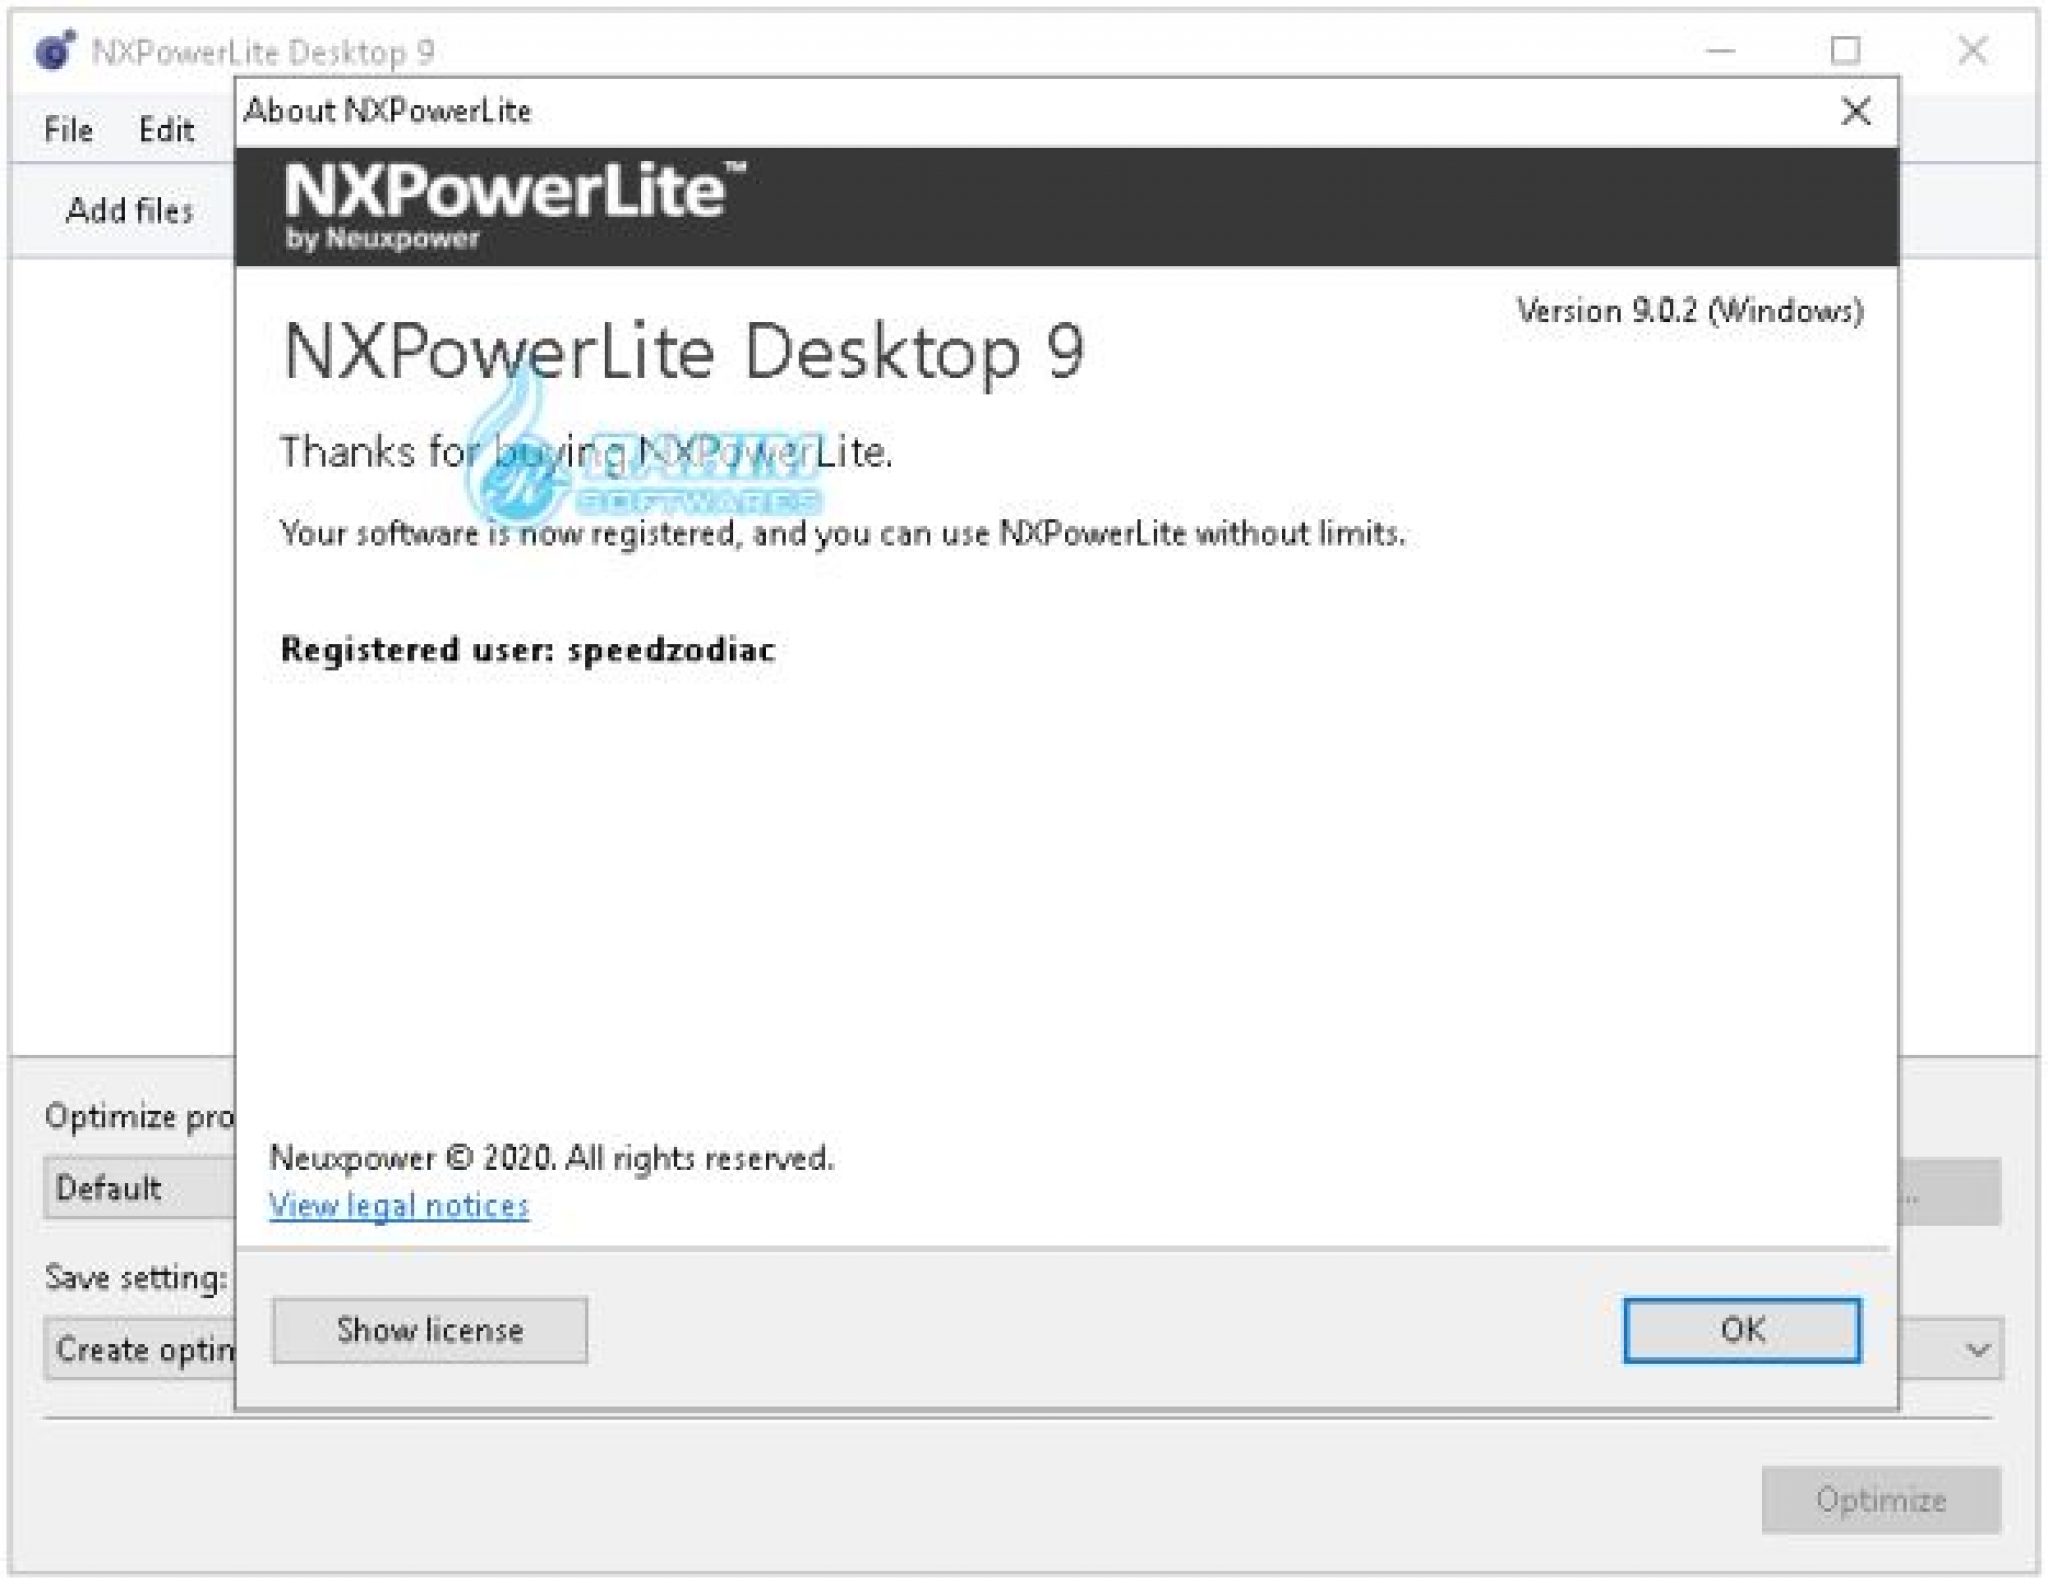 NXPowerLite Desktop 10.0.1 free downloads